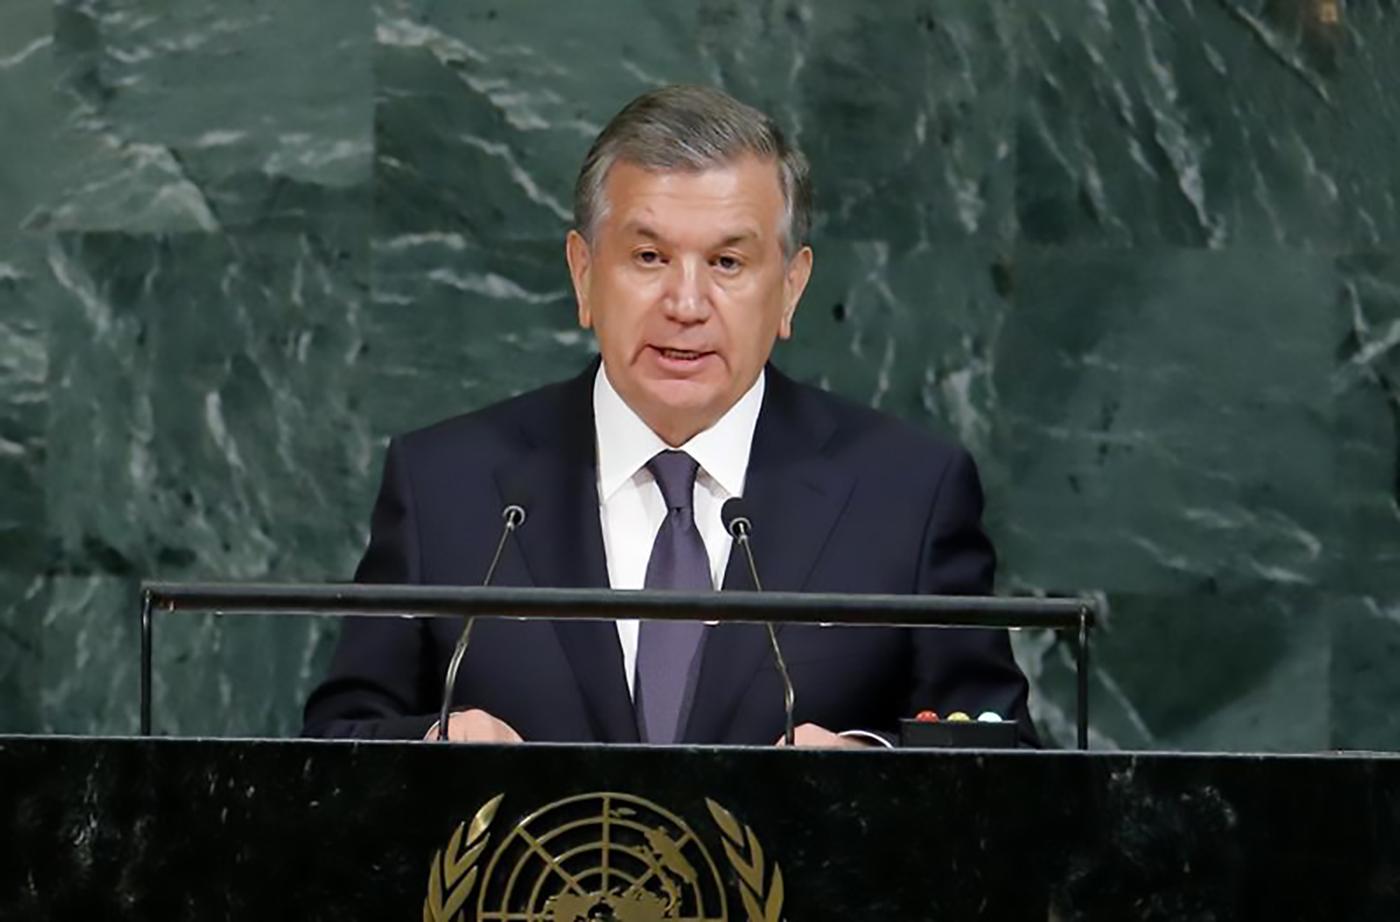 Le président de l'Ouzbékistan, Shavkat Mirziyoyev, s'adresse à la 72e Assemblée générale des Nations Unies au siège de l'ONU à New York, aux États-Unis, le 19 septembre 2017. 